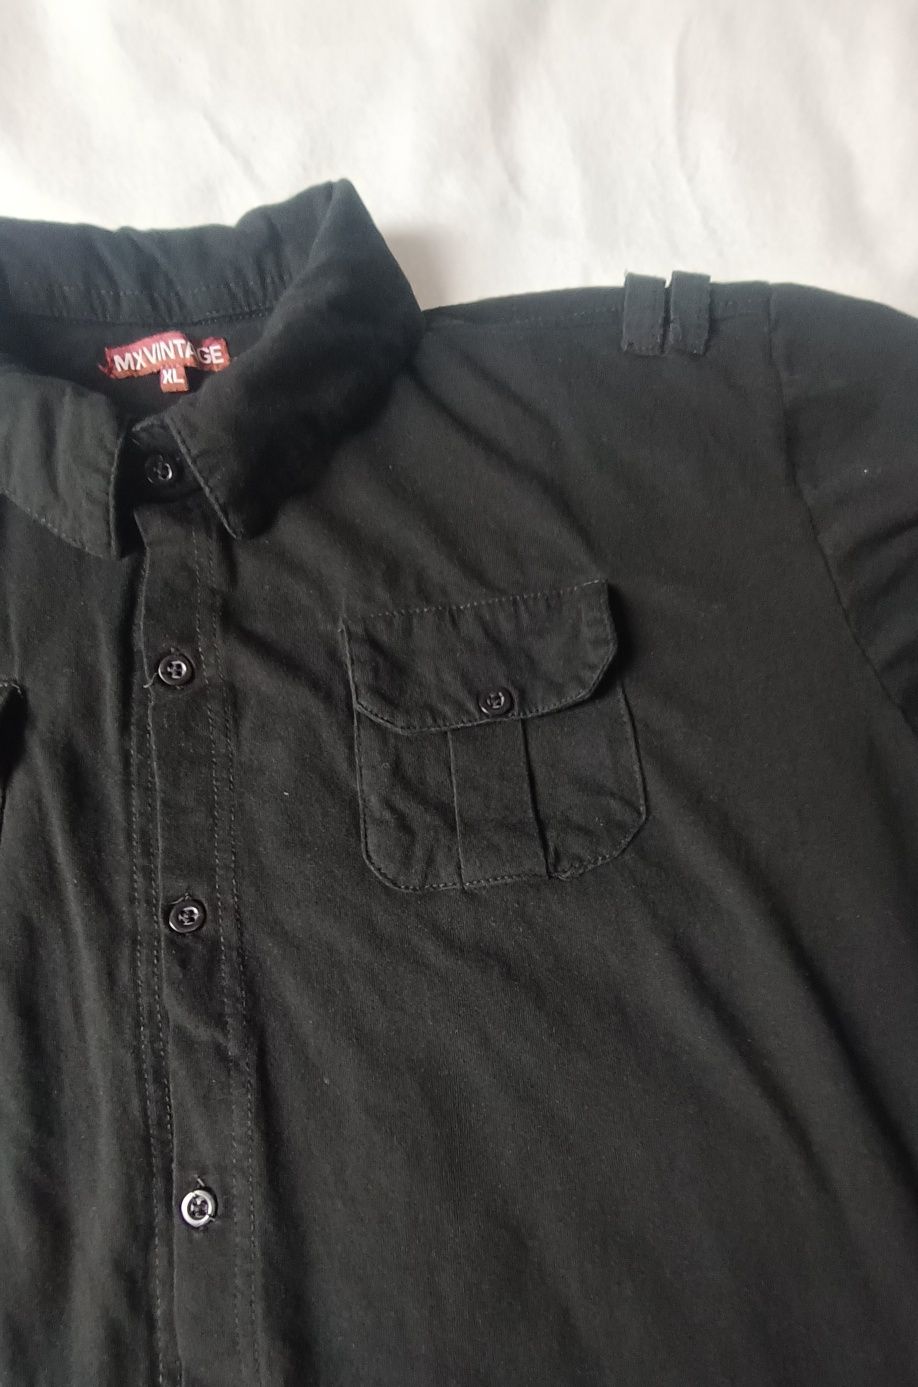 Koszulka męska, zapinana z krótkim rękawem, rozmiar XL